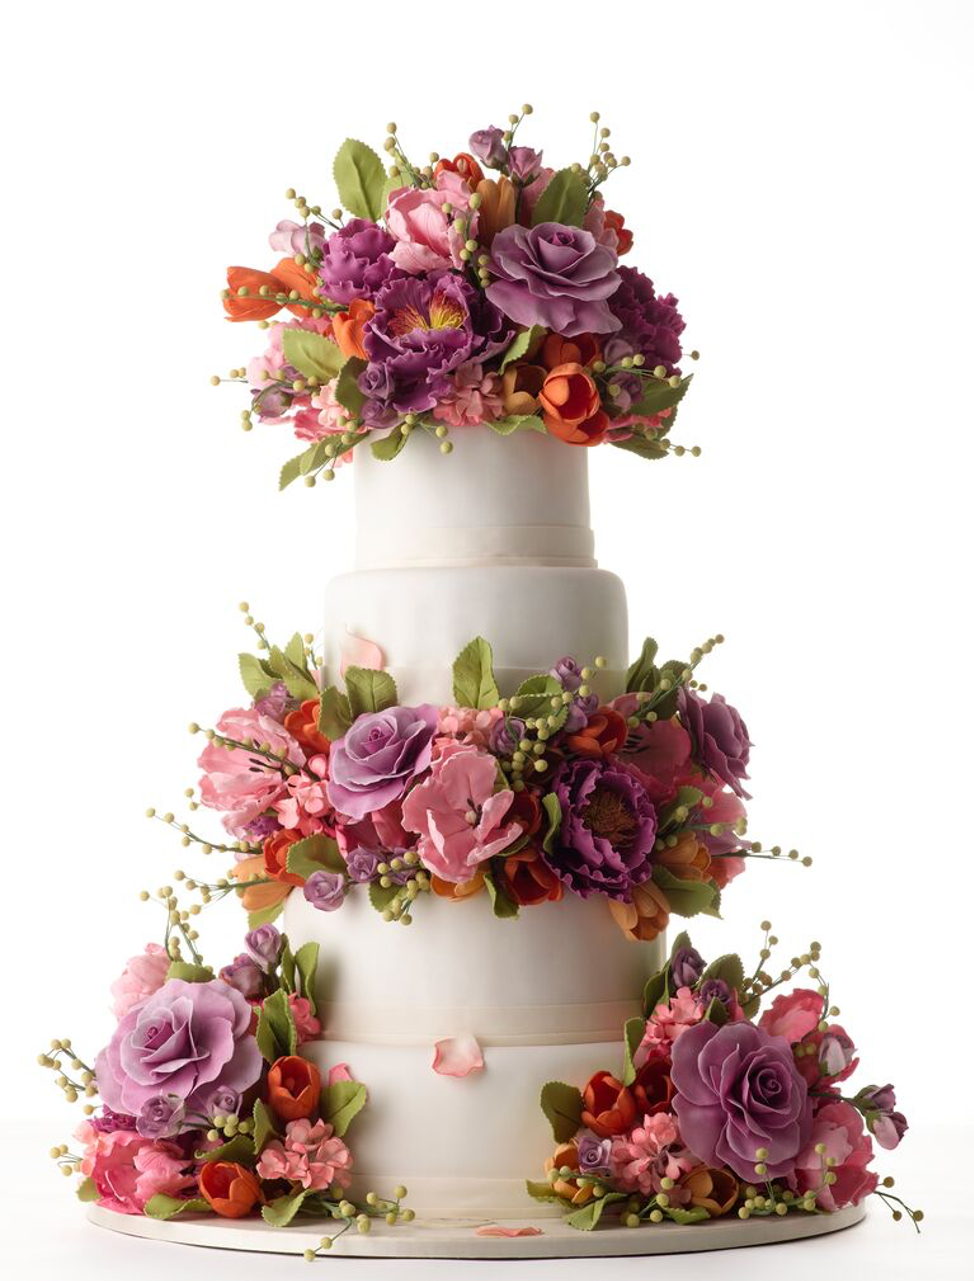 82 Wedding Cake Ideas From Our Dessert Expert Extraordinaire